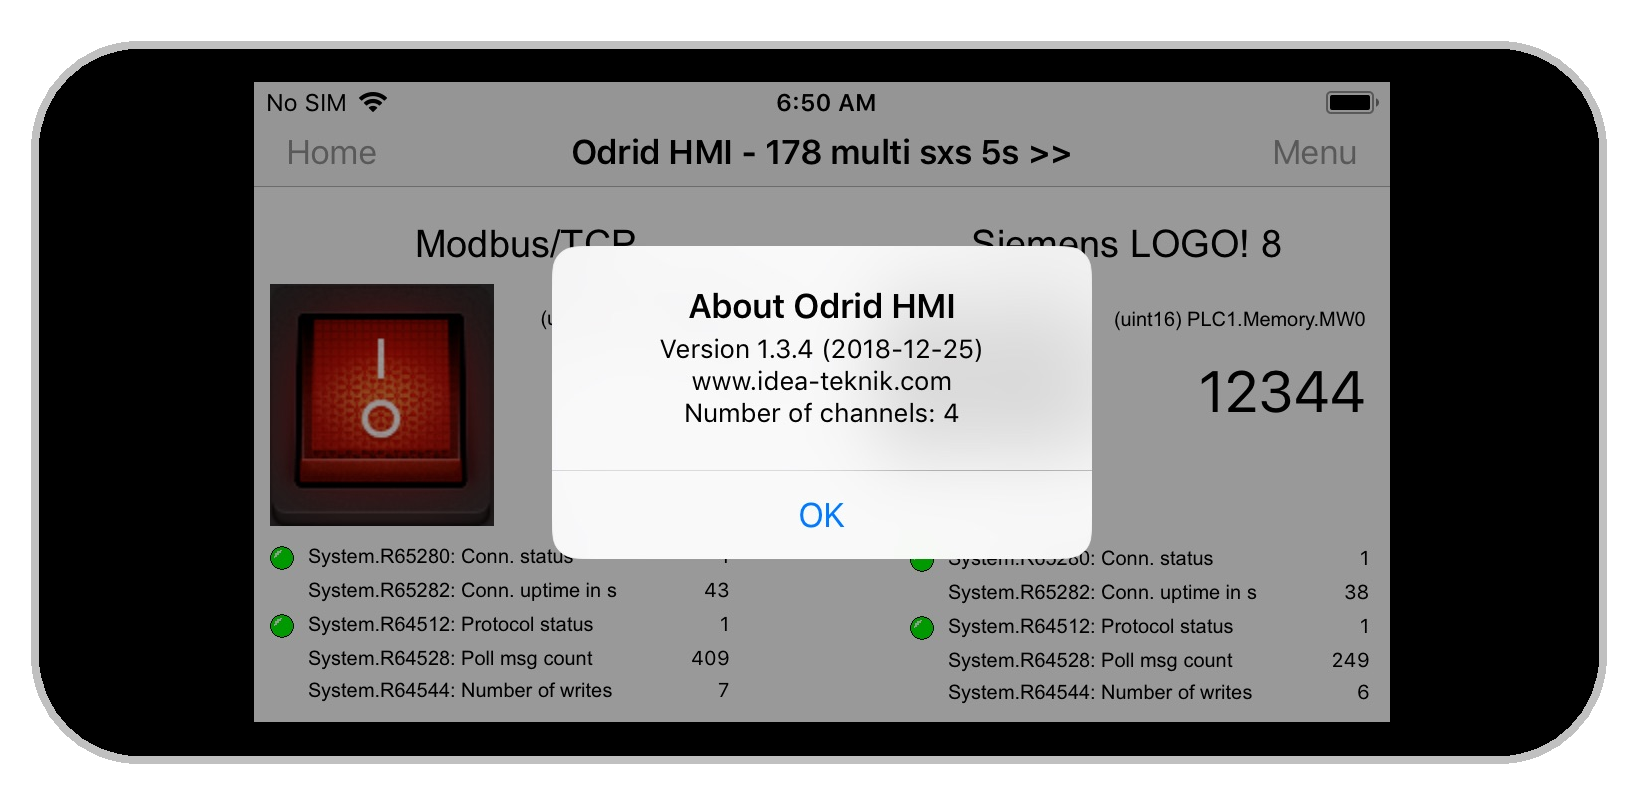 Odrid HMI 1.3.4 on an Iphone 5s